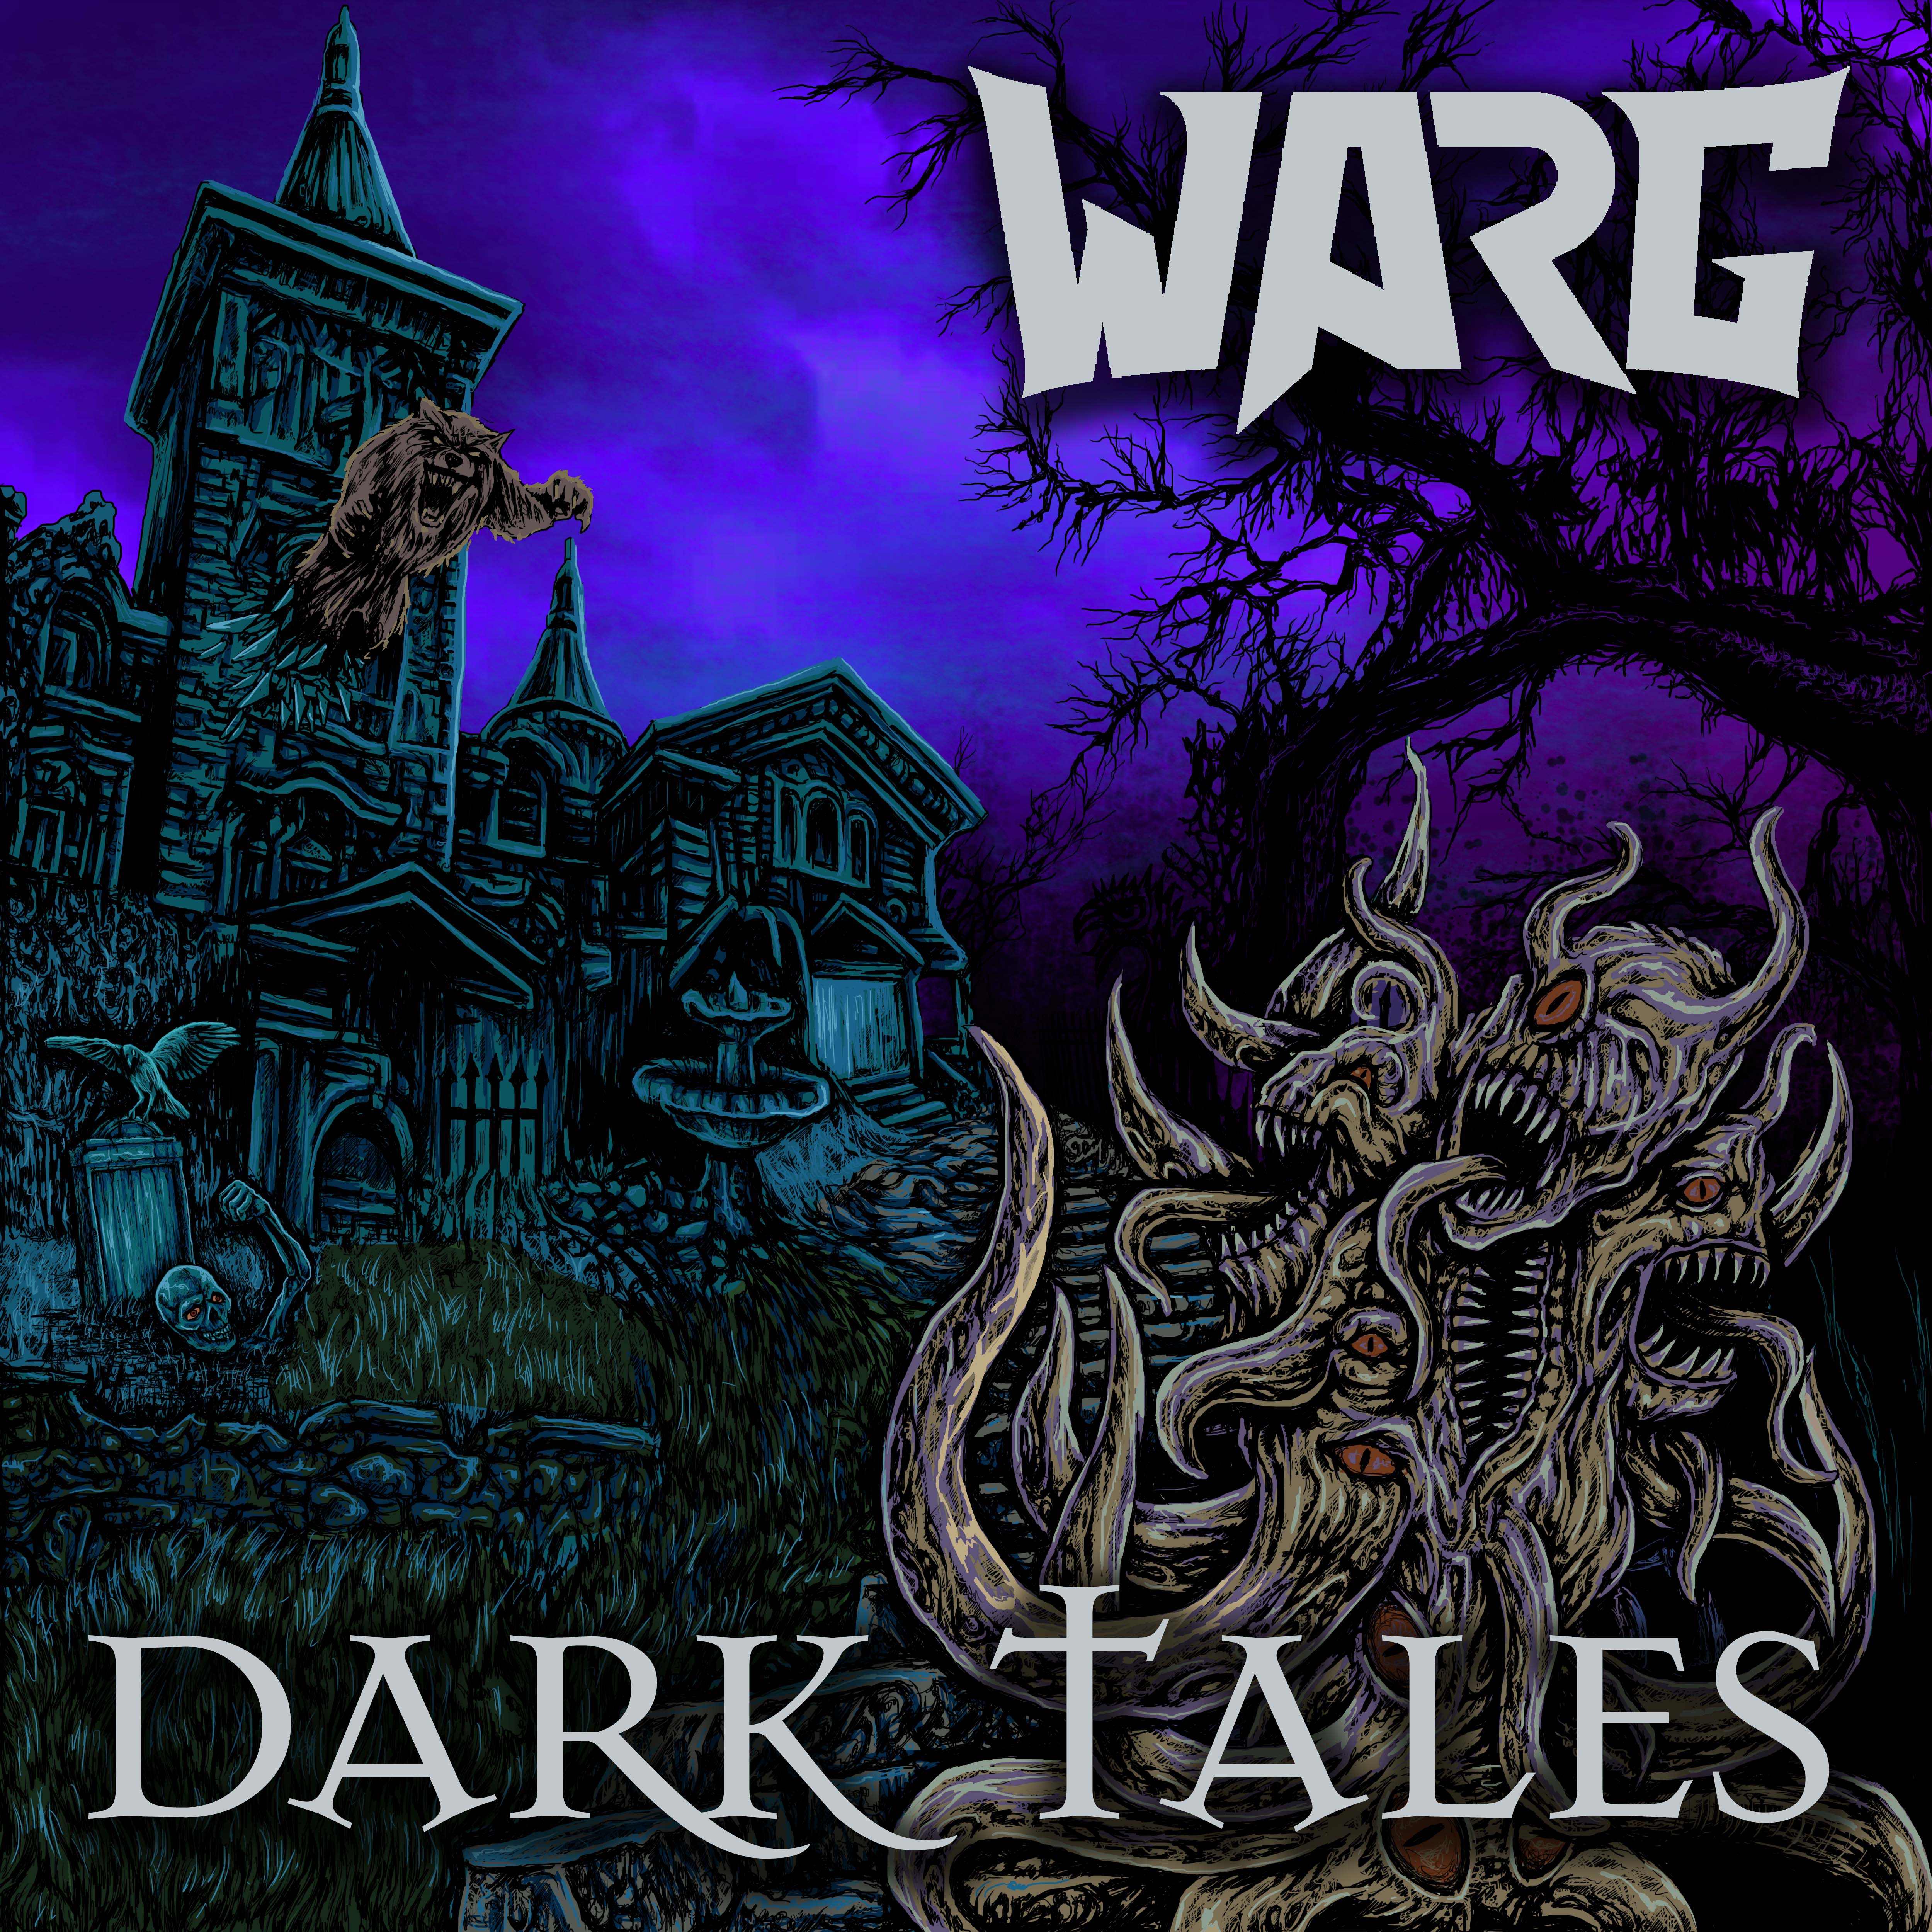 WARG publica nuevo disco “Dark Tales” y primeras fechas de presentación